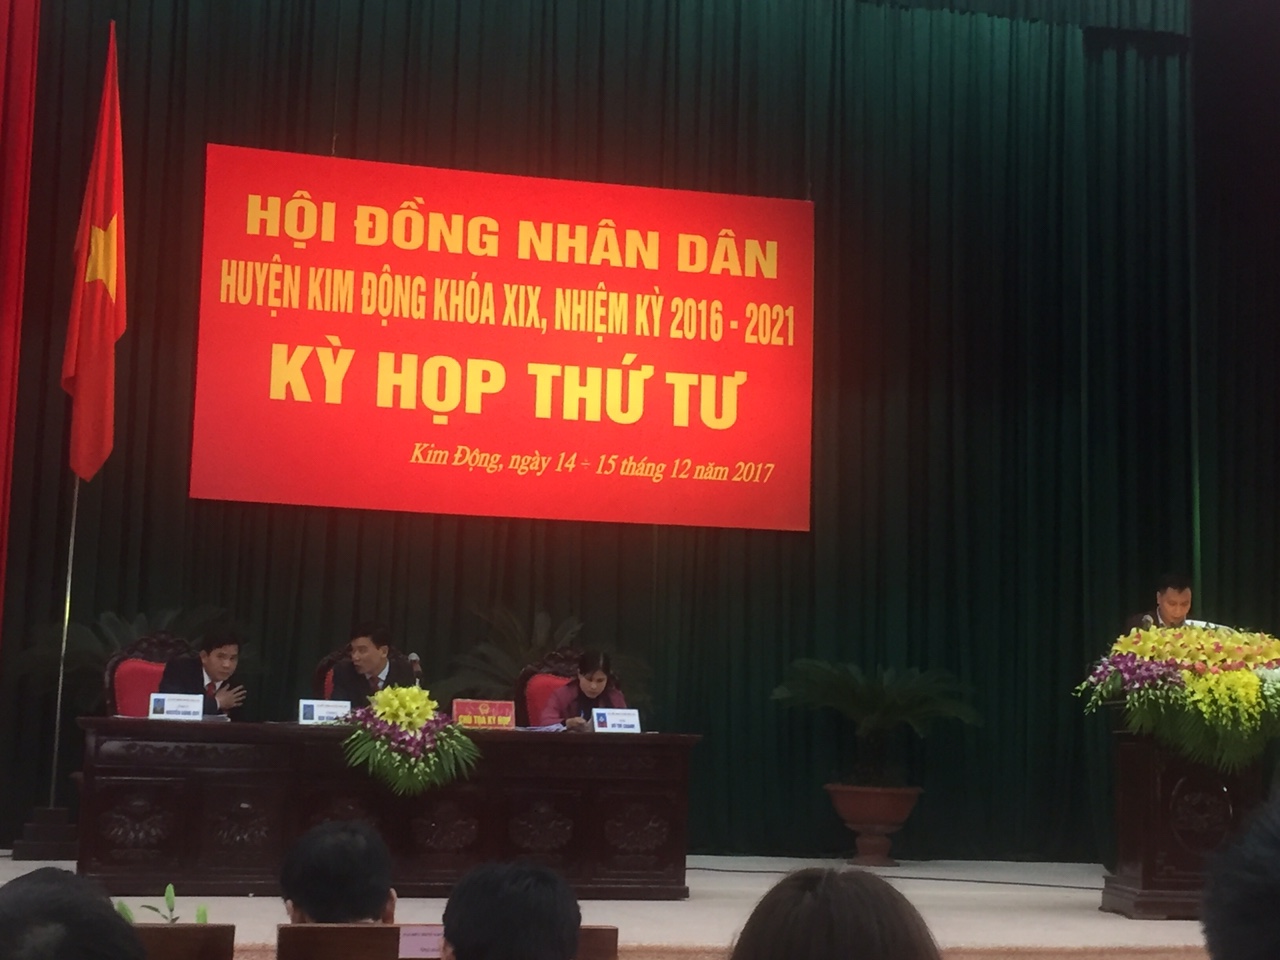 Kỳ họp thứ 4, Hội đồng nhân dân huyện Kim Động khóa XIX